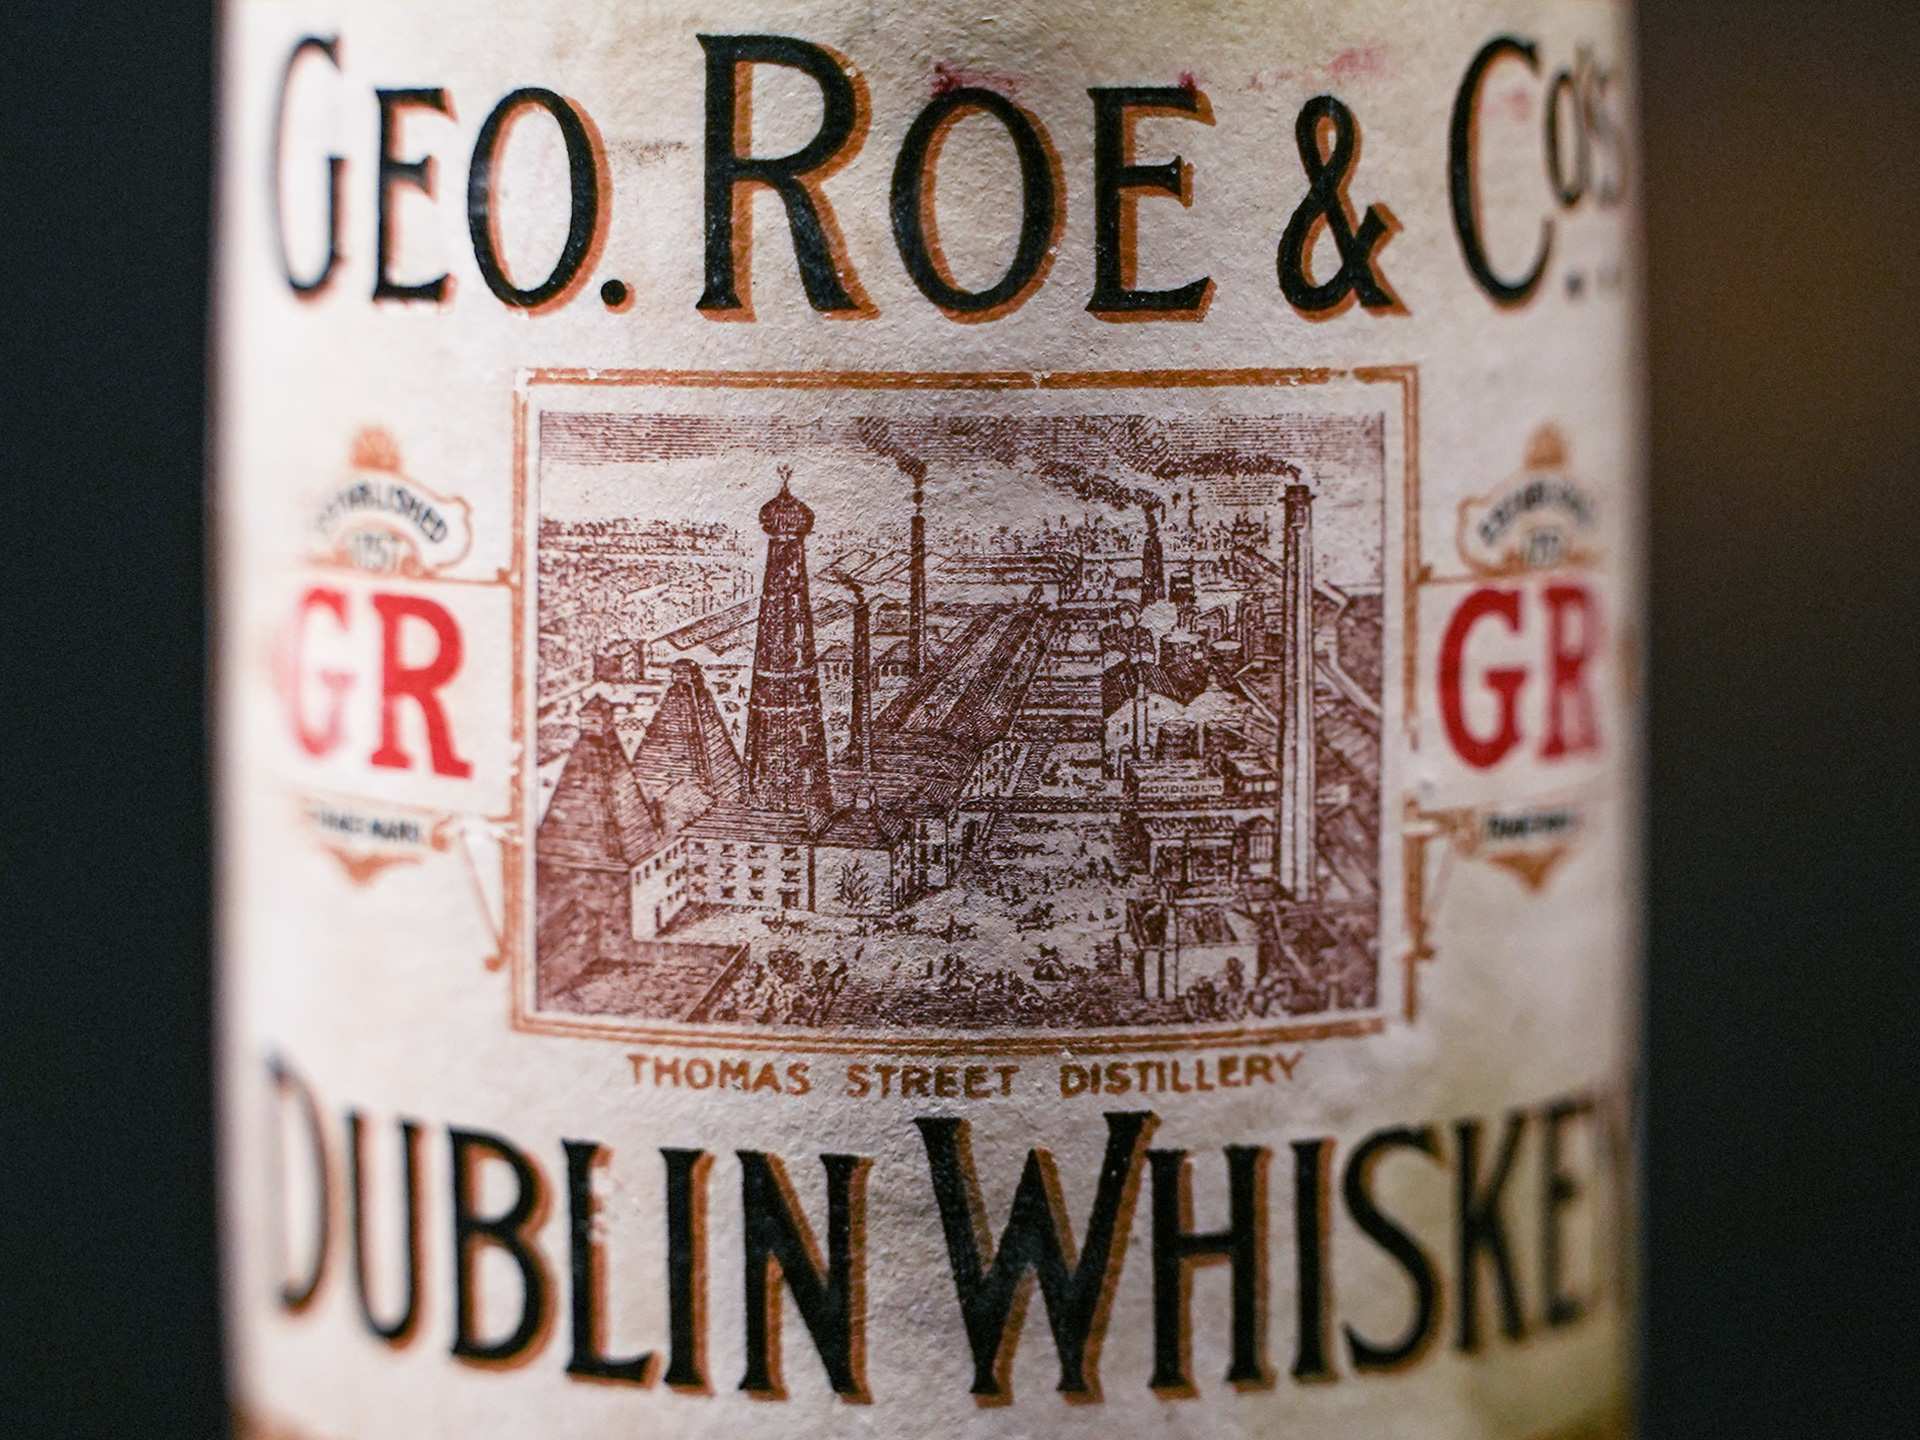 George Roe & Co Distillery in Dublin